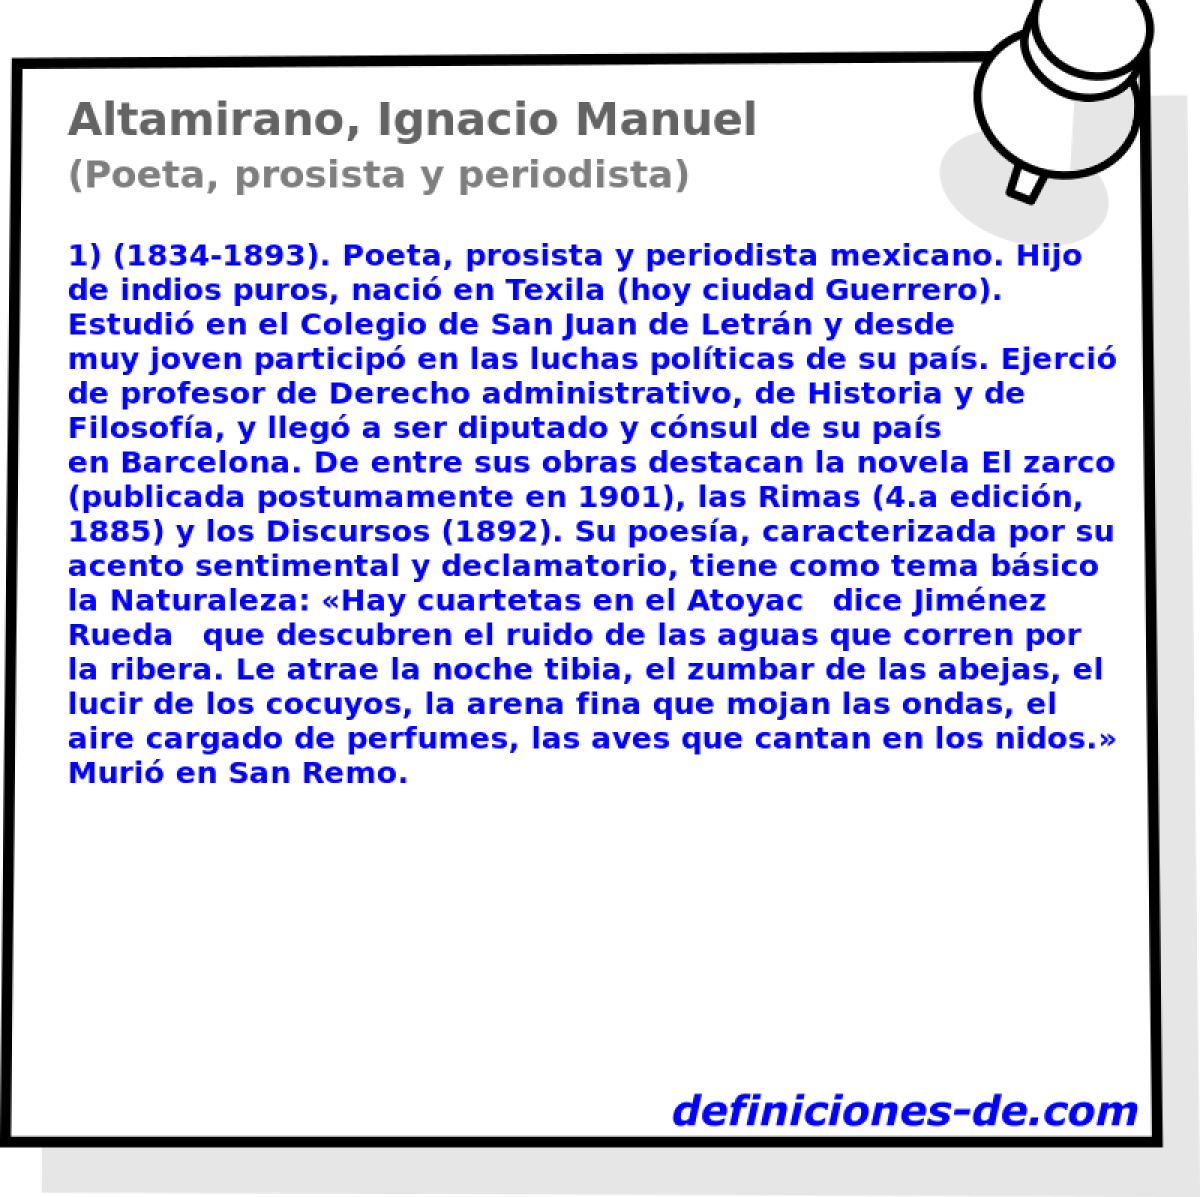 Altamirano, Ignacio Manuel (Poeta, prosista y periodista)